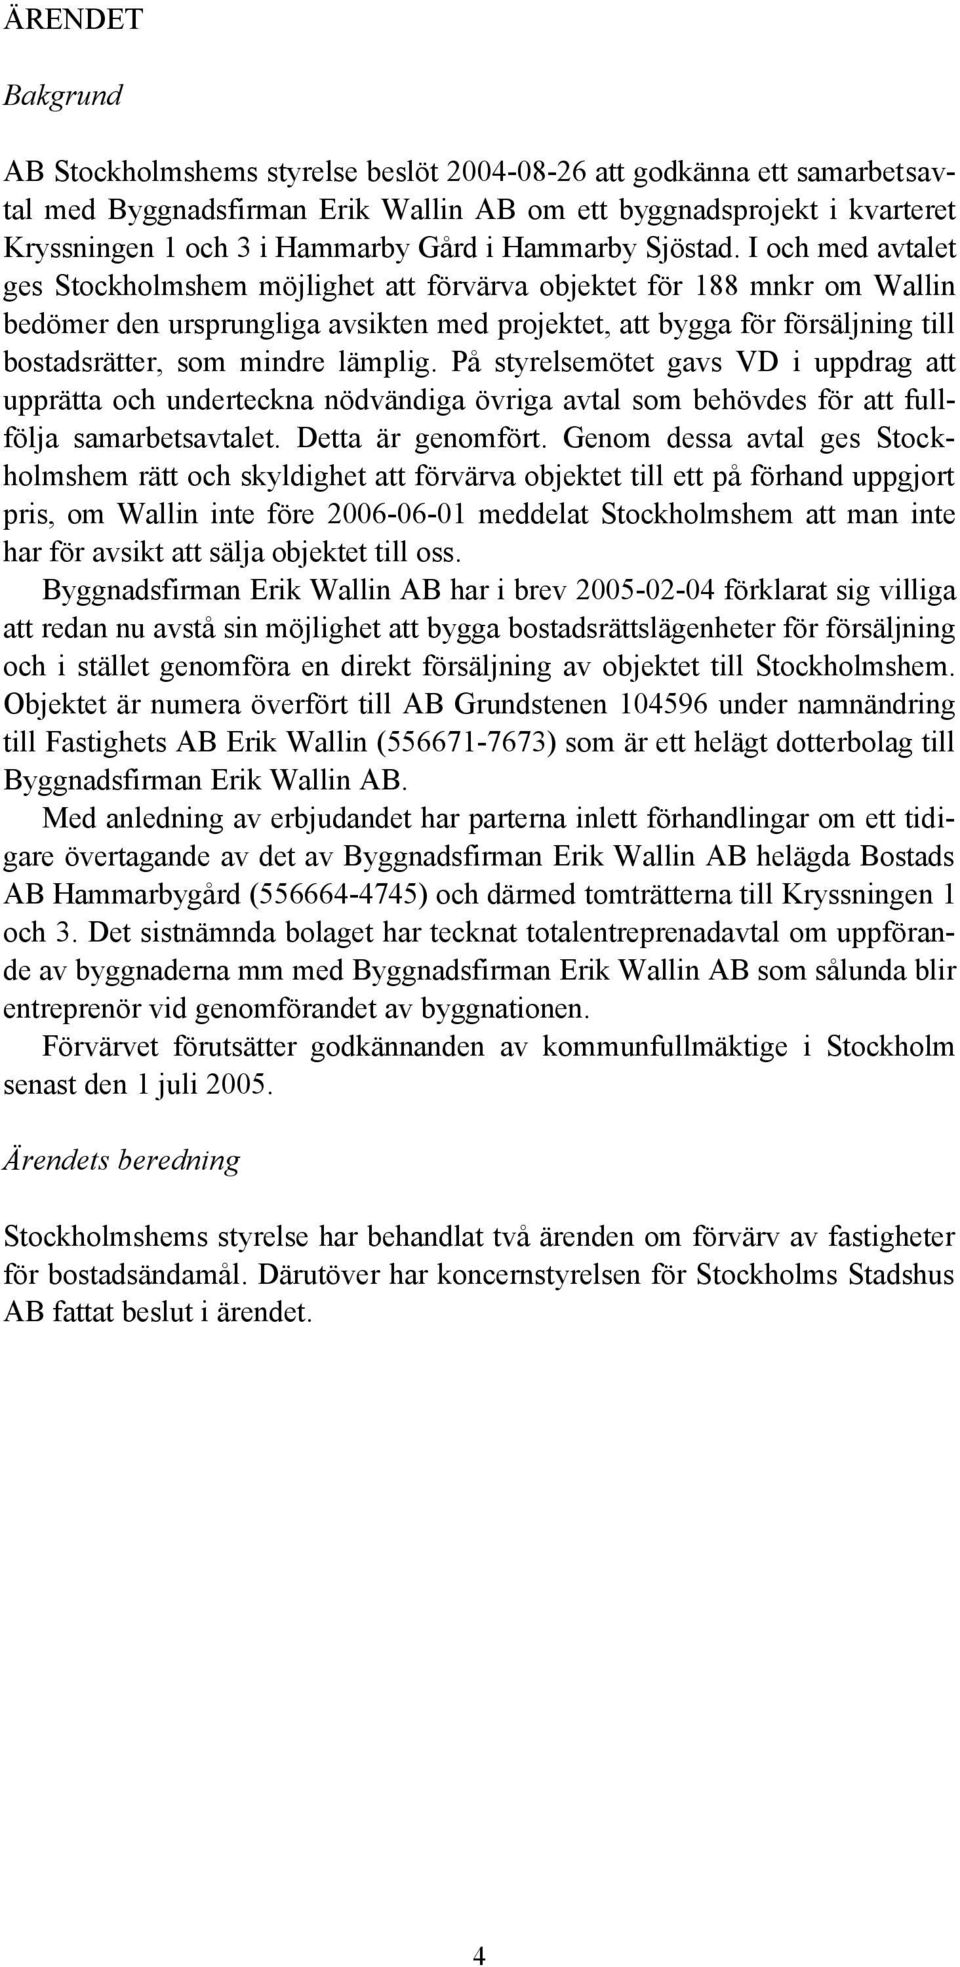 I och med avtalet ges Stockholmshem möjlighet att förvärva objektet för 188 mnkr om Wallin bedömer den ursprungliga avsikten med projektet, att bygga för försäljning till bostadsrätter, som mindre